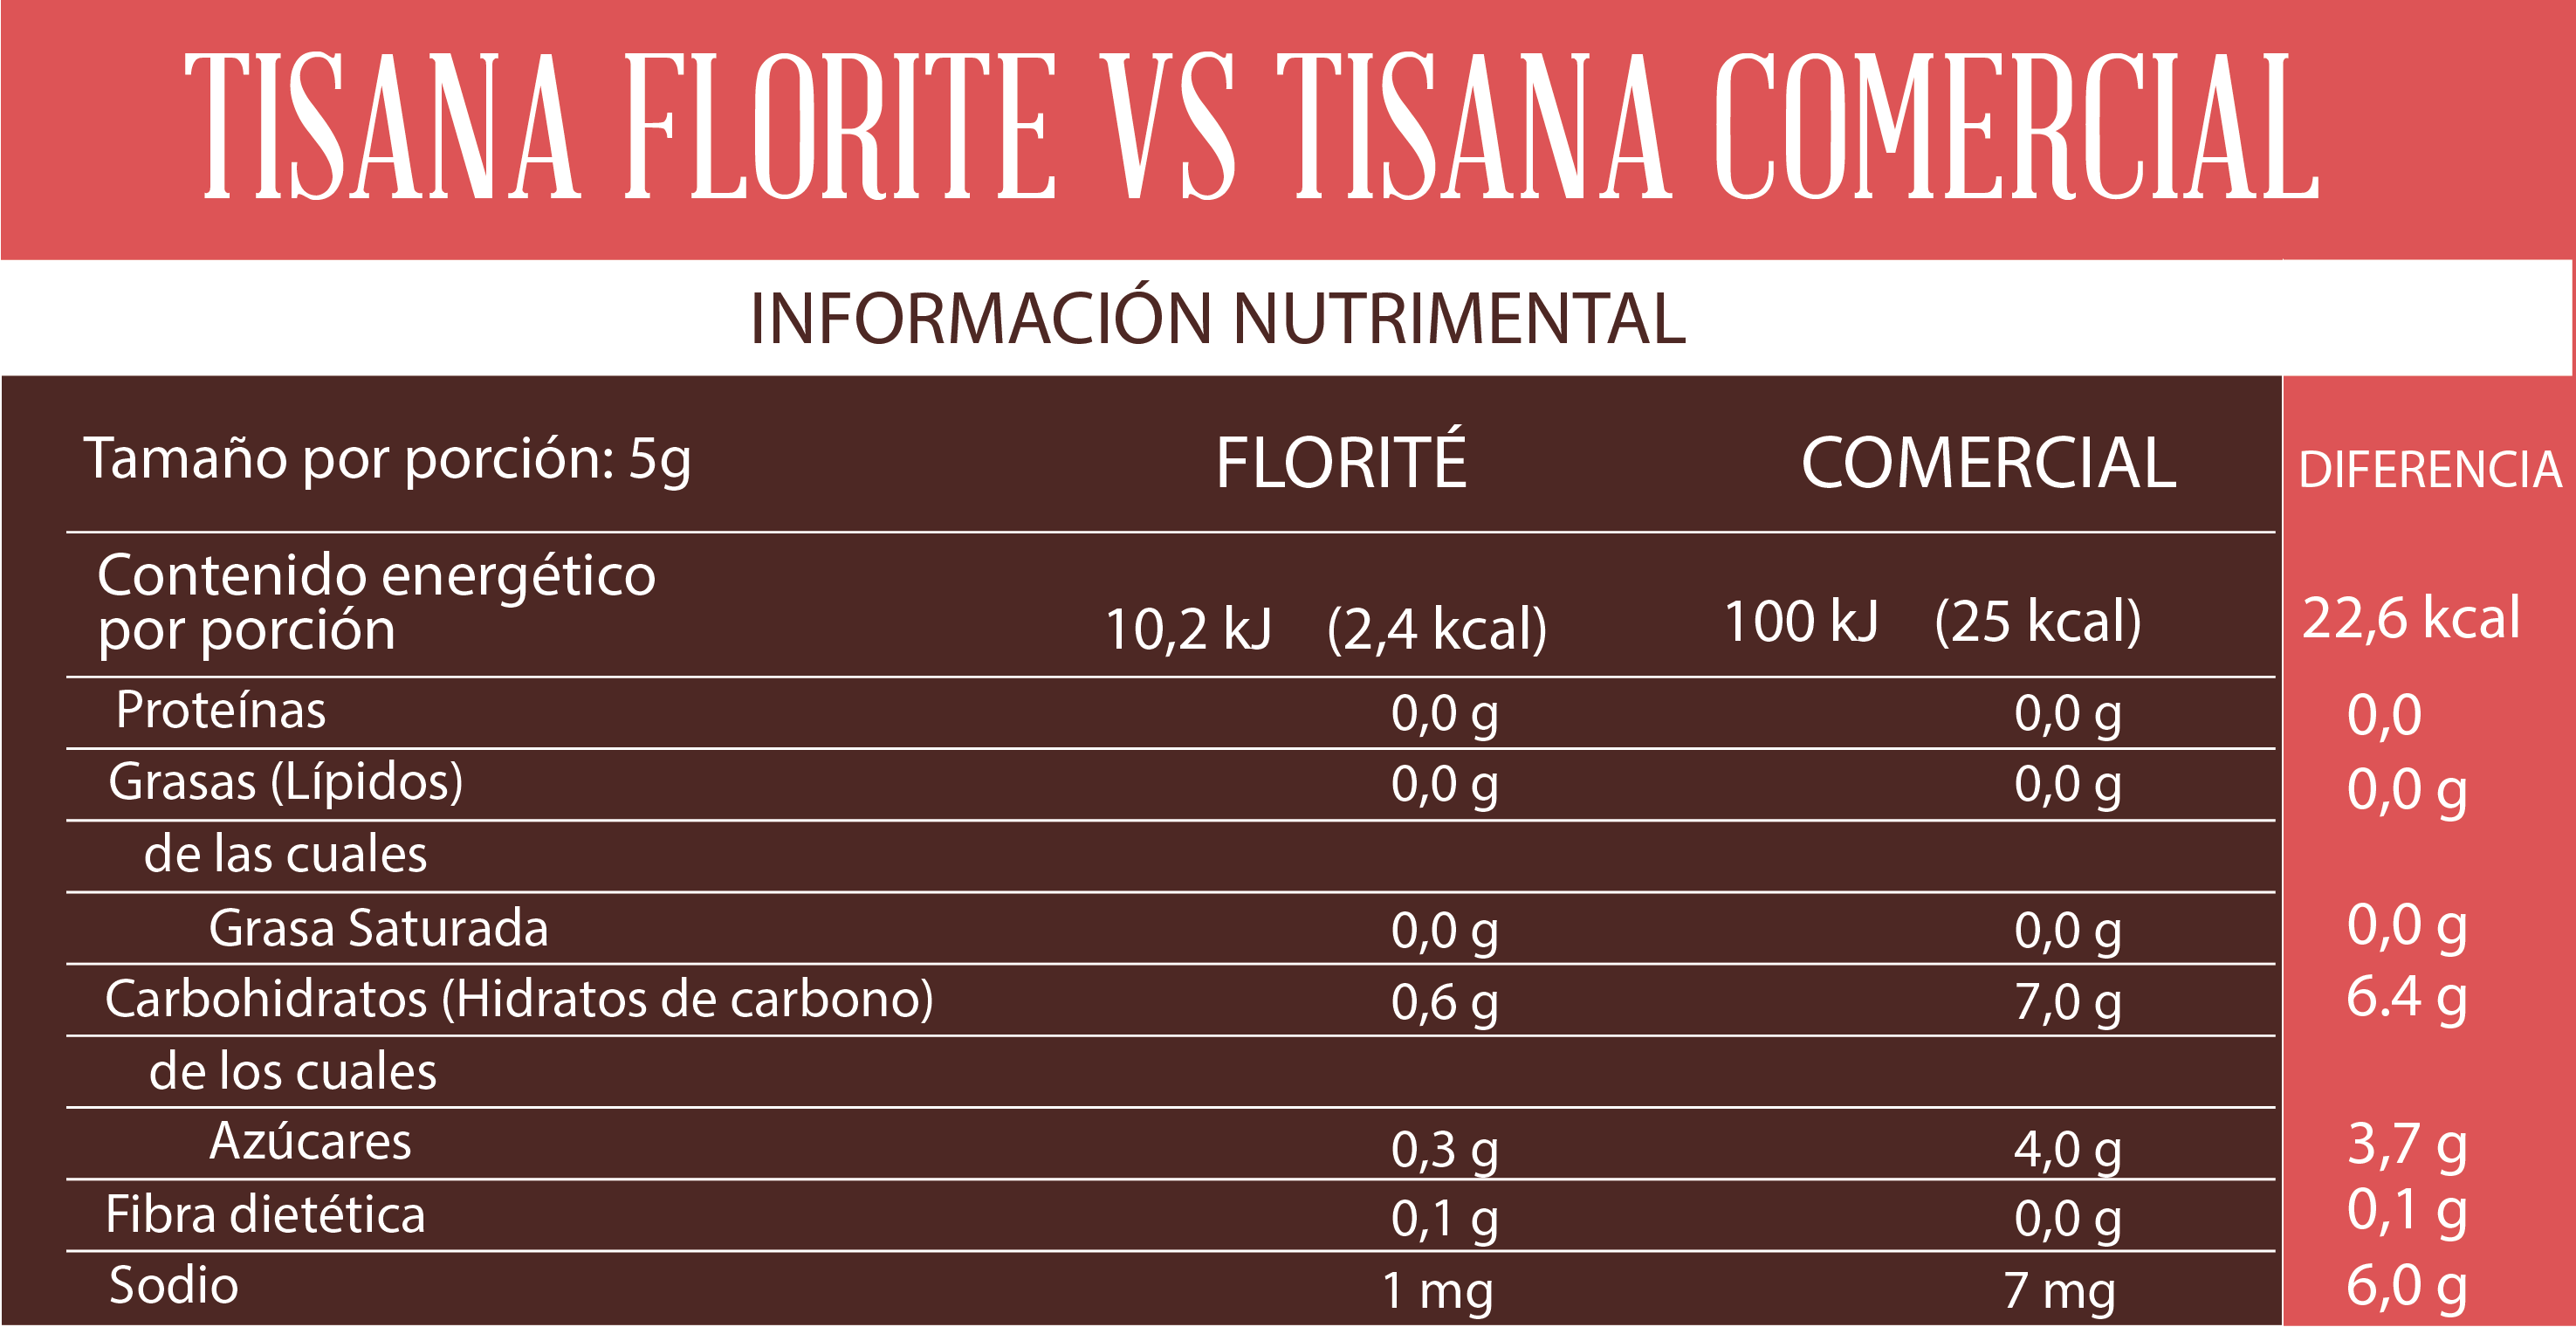 Tabla nutrimental de tisanas